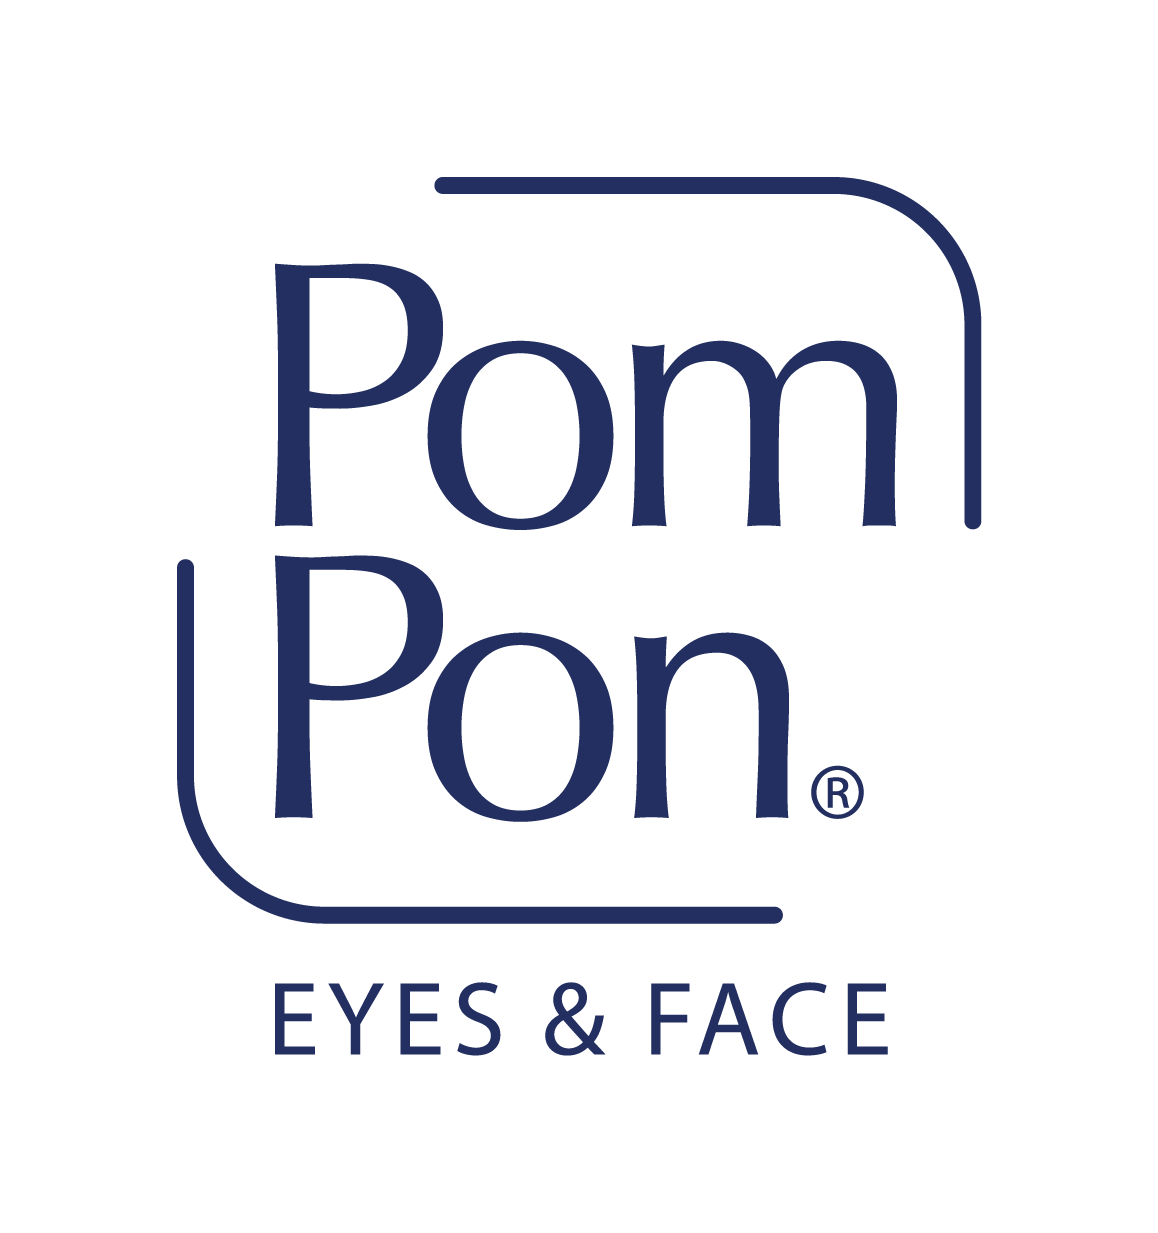 Pom Pon